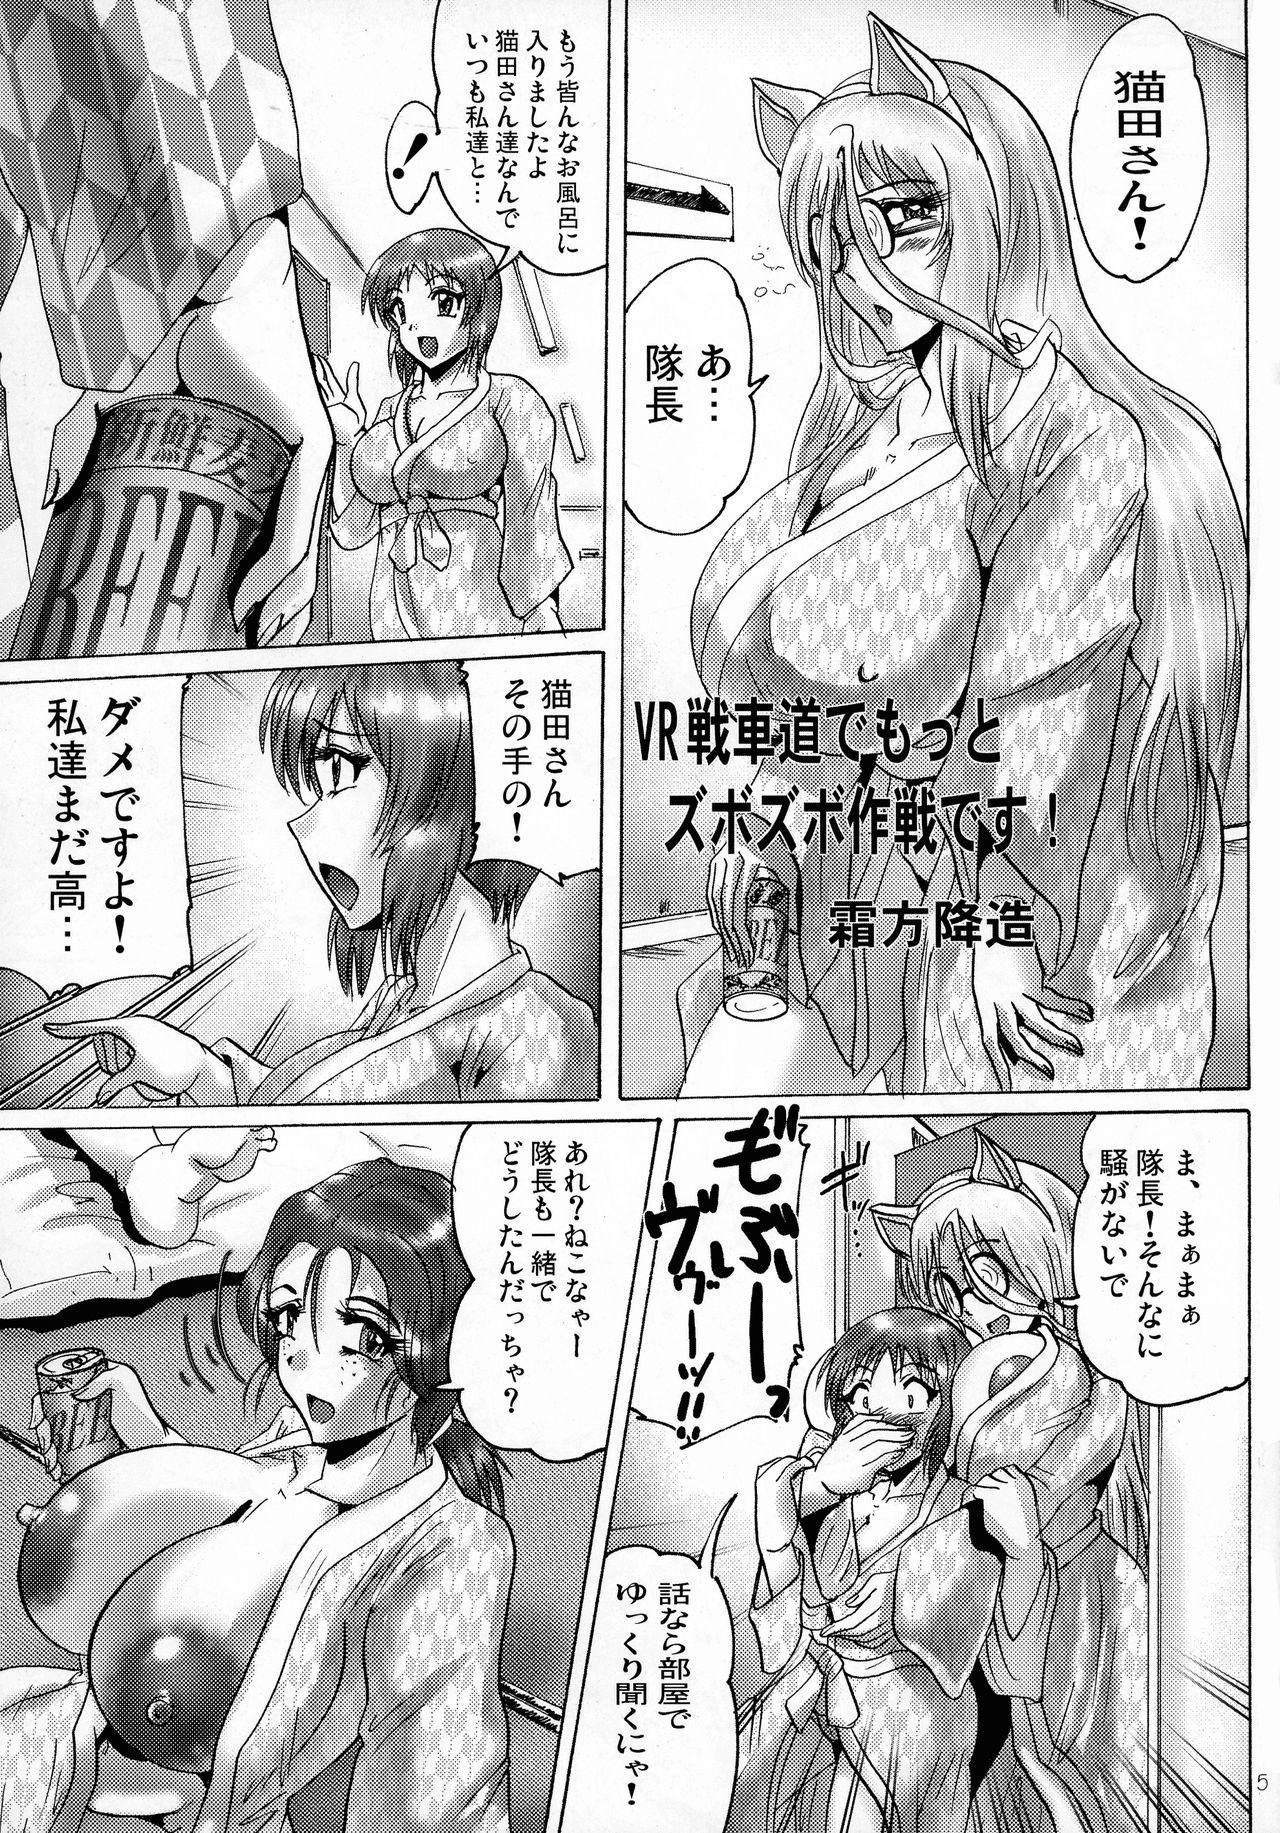 Deutsch Shin Hanzuuryoku 35 - Girls und panzer Kemono friends Stepsis - Page 5